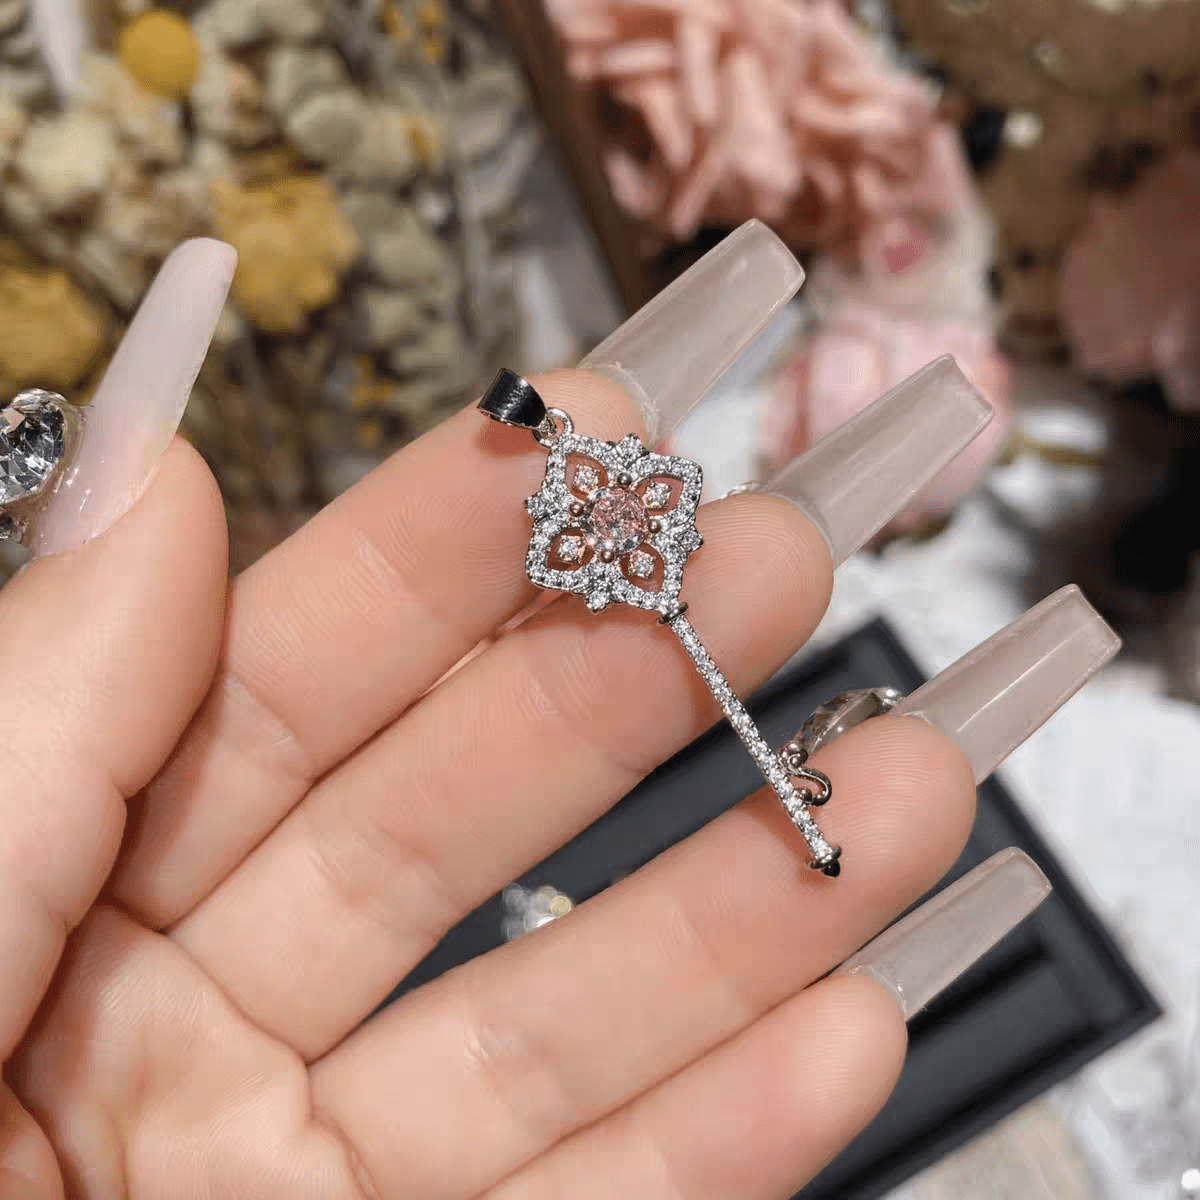 Crystal Floral Key Pendant Necklace - ArtGalleryZen